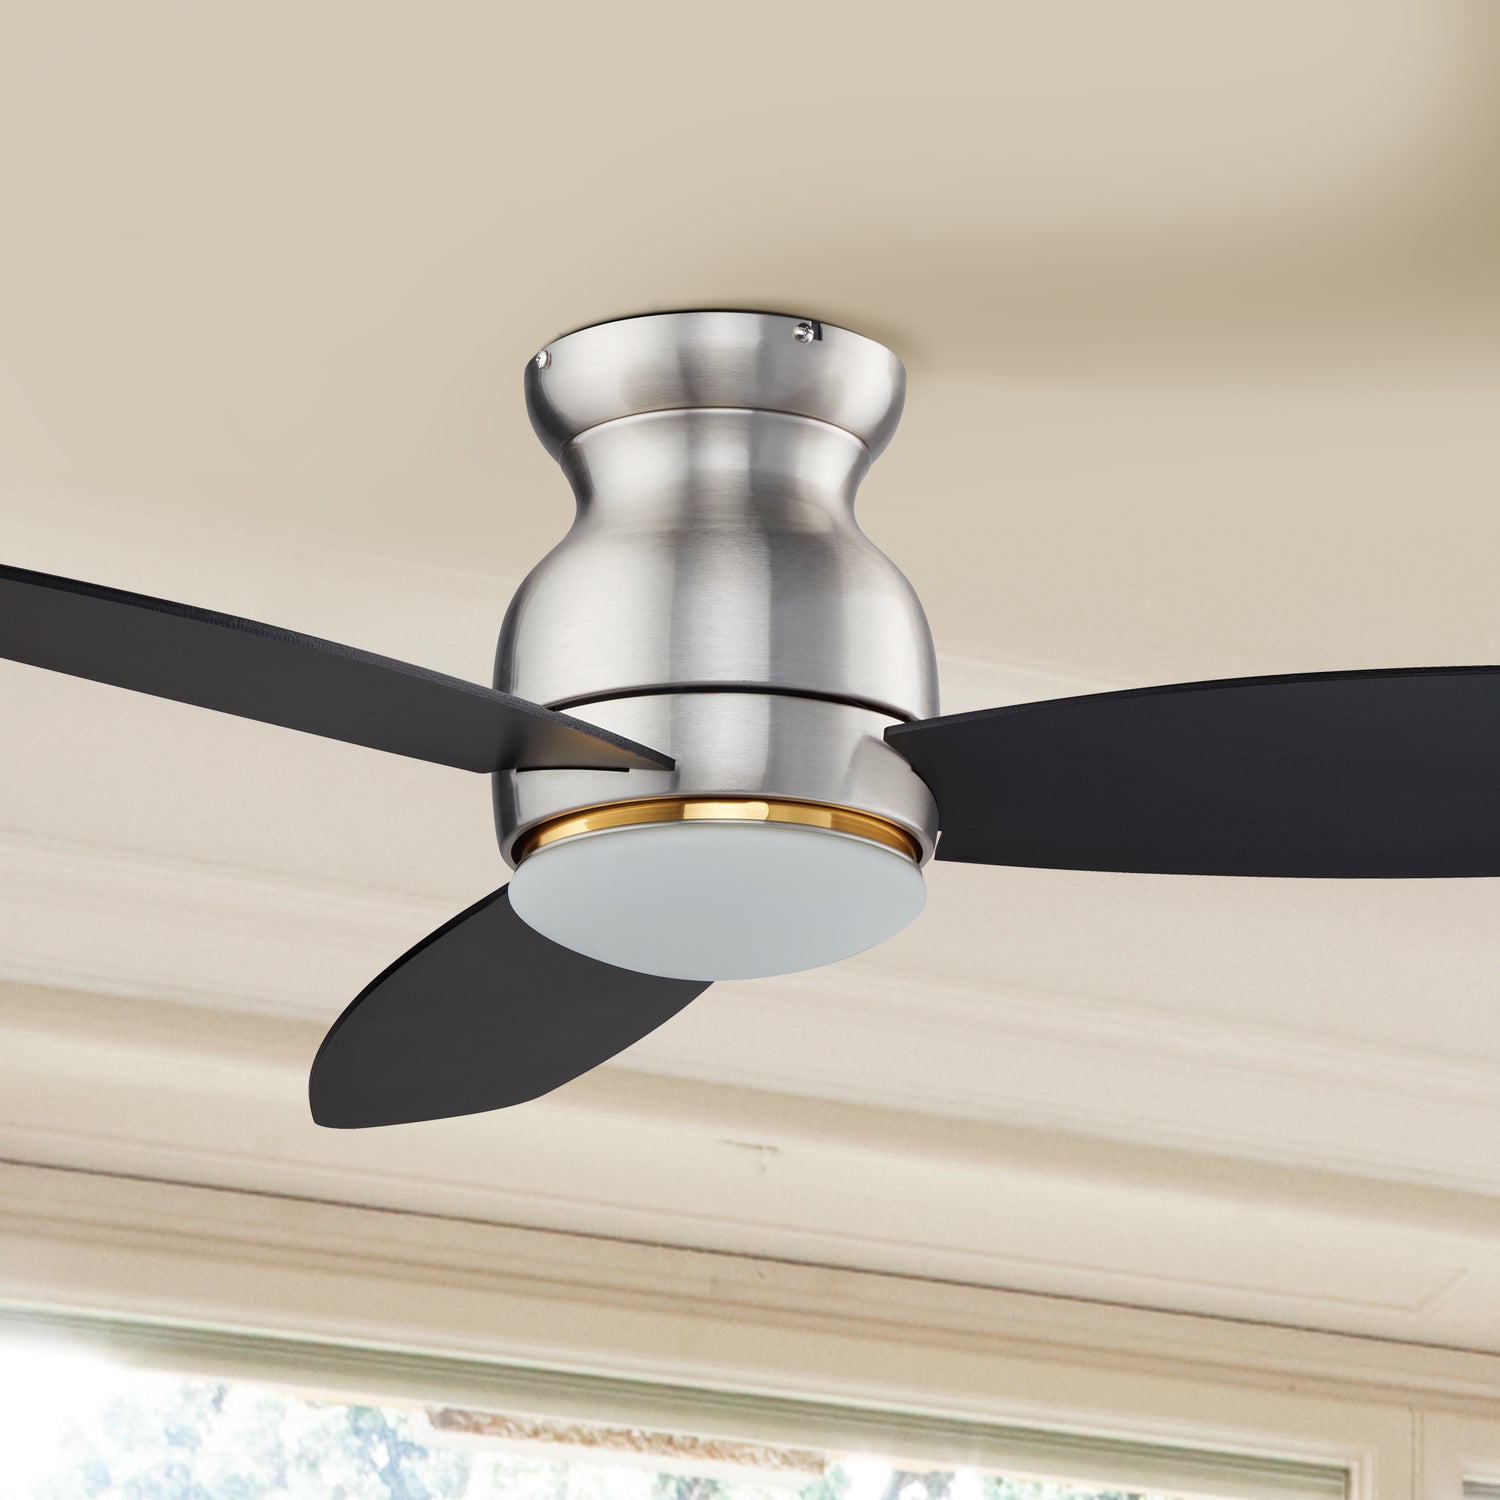 Low Profile Smart Ceiling Fan